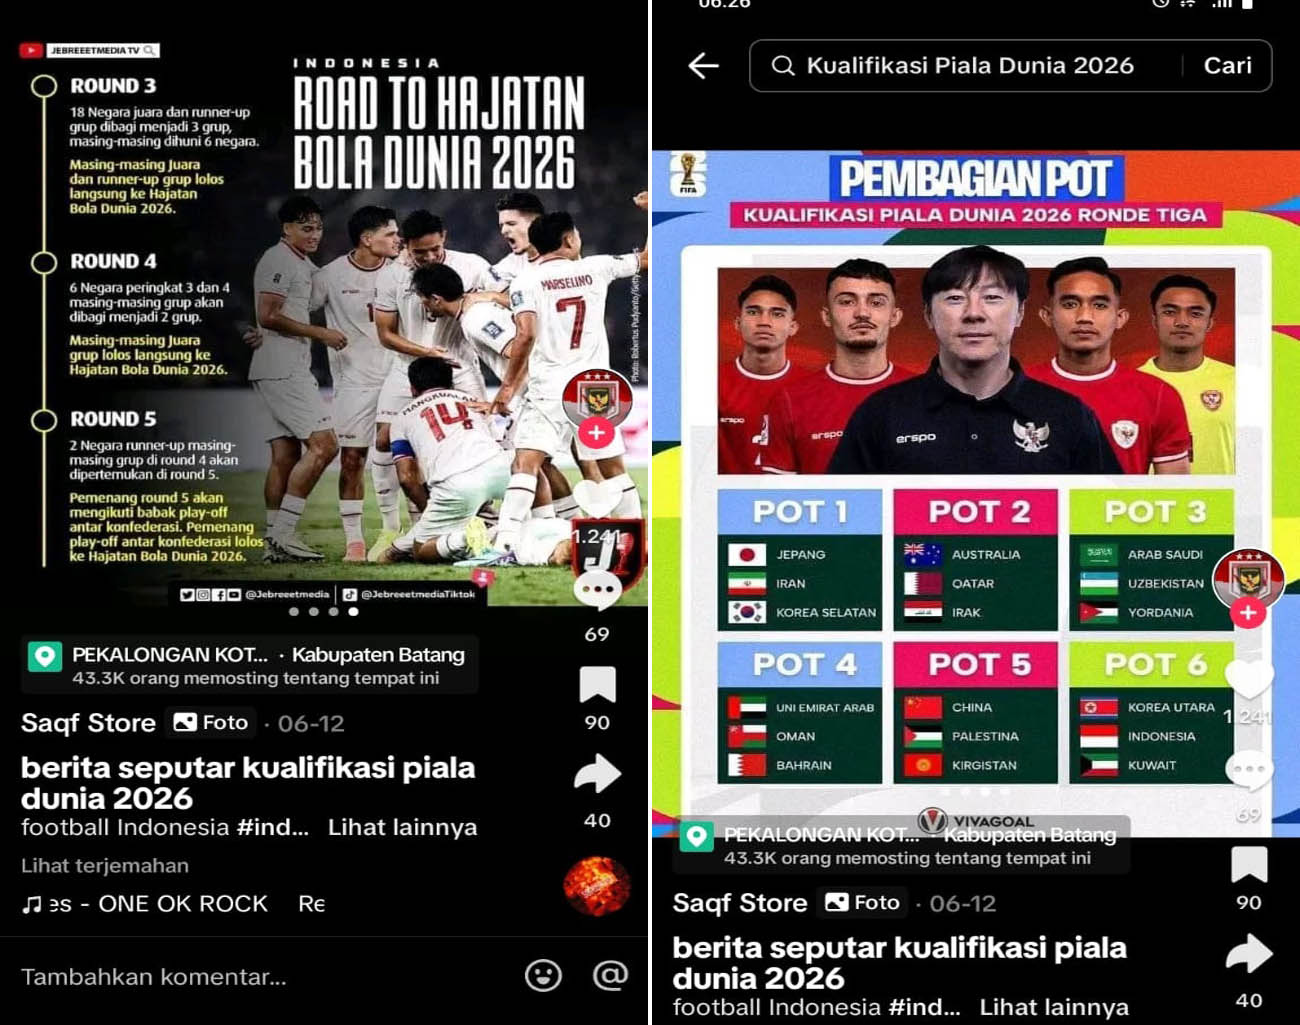 Hasil Drawing Ronde 3 Kualifikasi Piala Dunia 2026, Harapan Penggemar Sepak Bola Indonesia, Erick Thohir